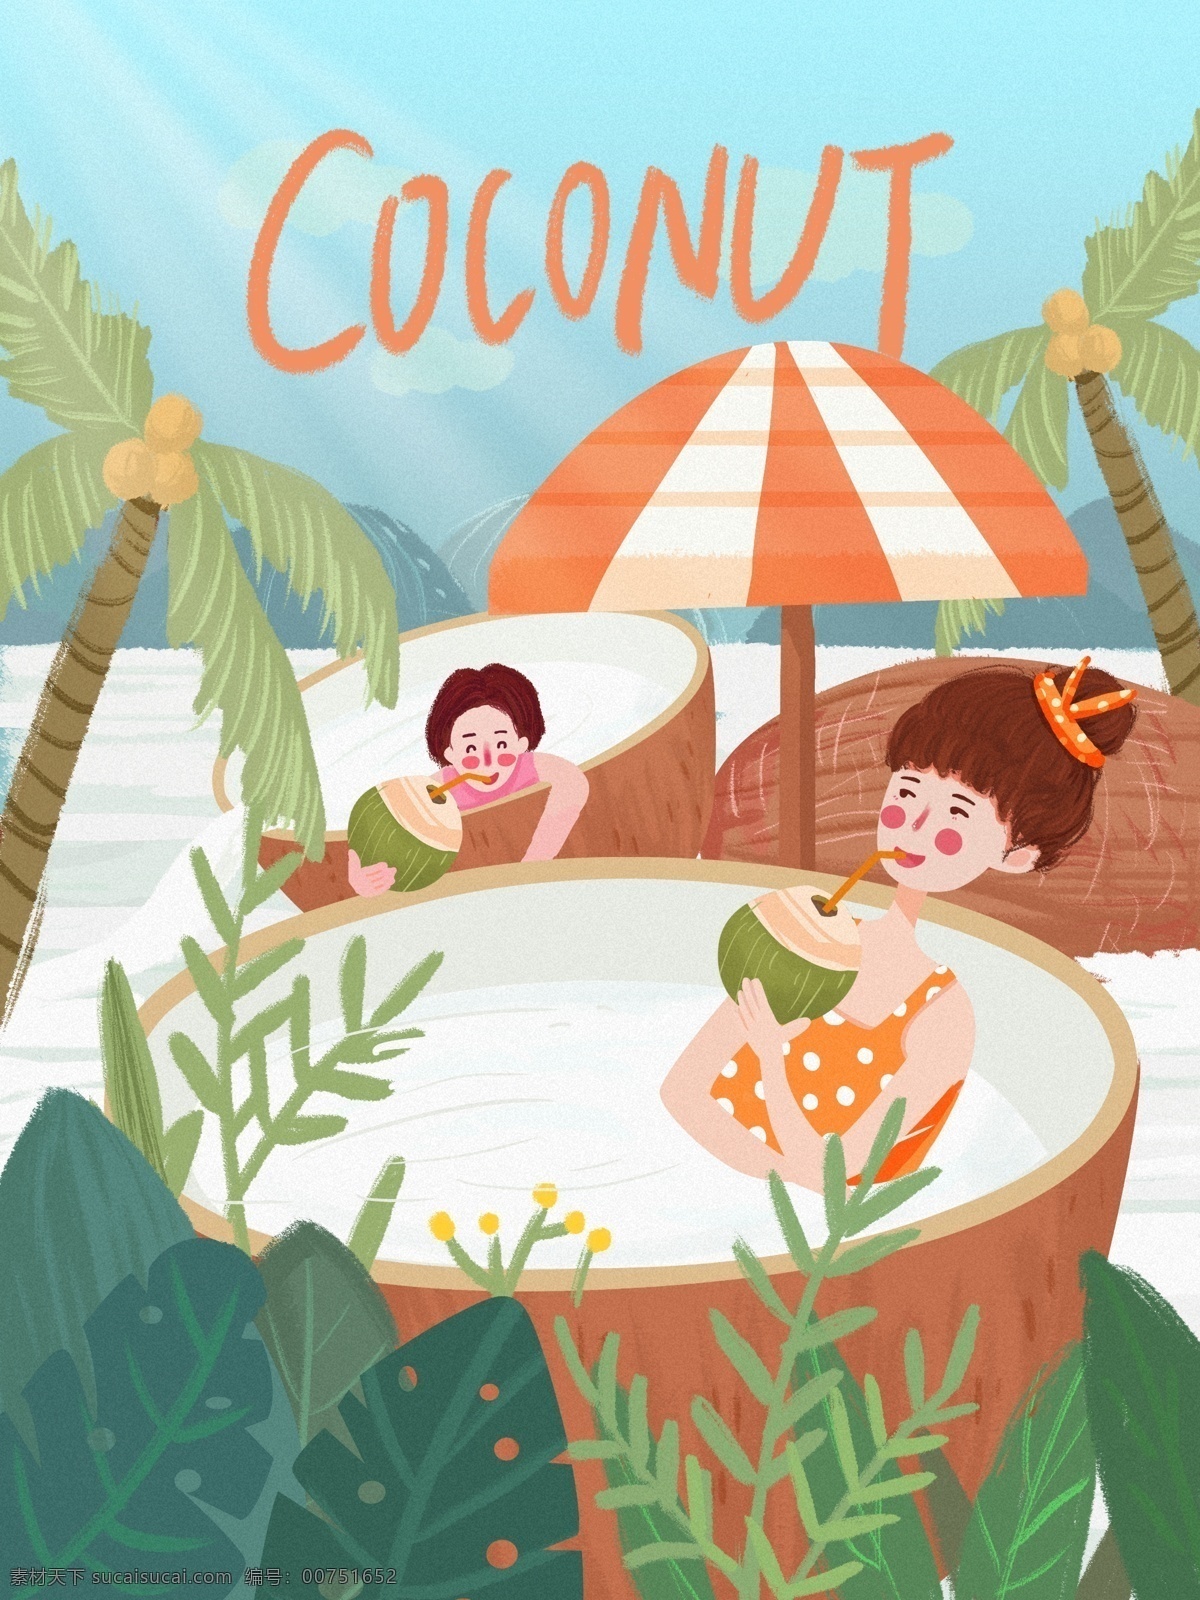 创意 水果 椰 奶 浴 椰子 邂逅 创意水果 椰果 女孩 椰树 植物 椰果汁 椰果浴 清新插画 手机配图